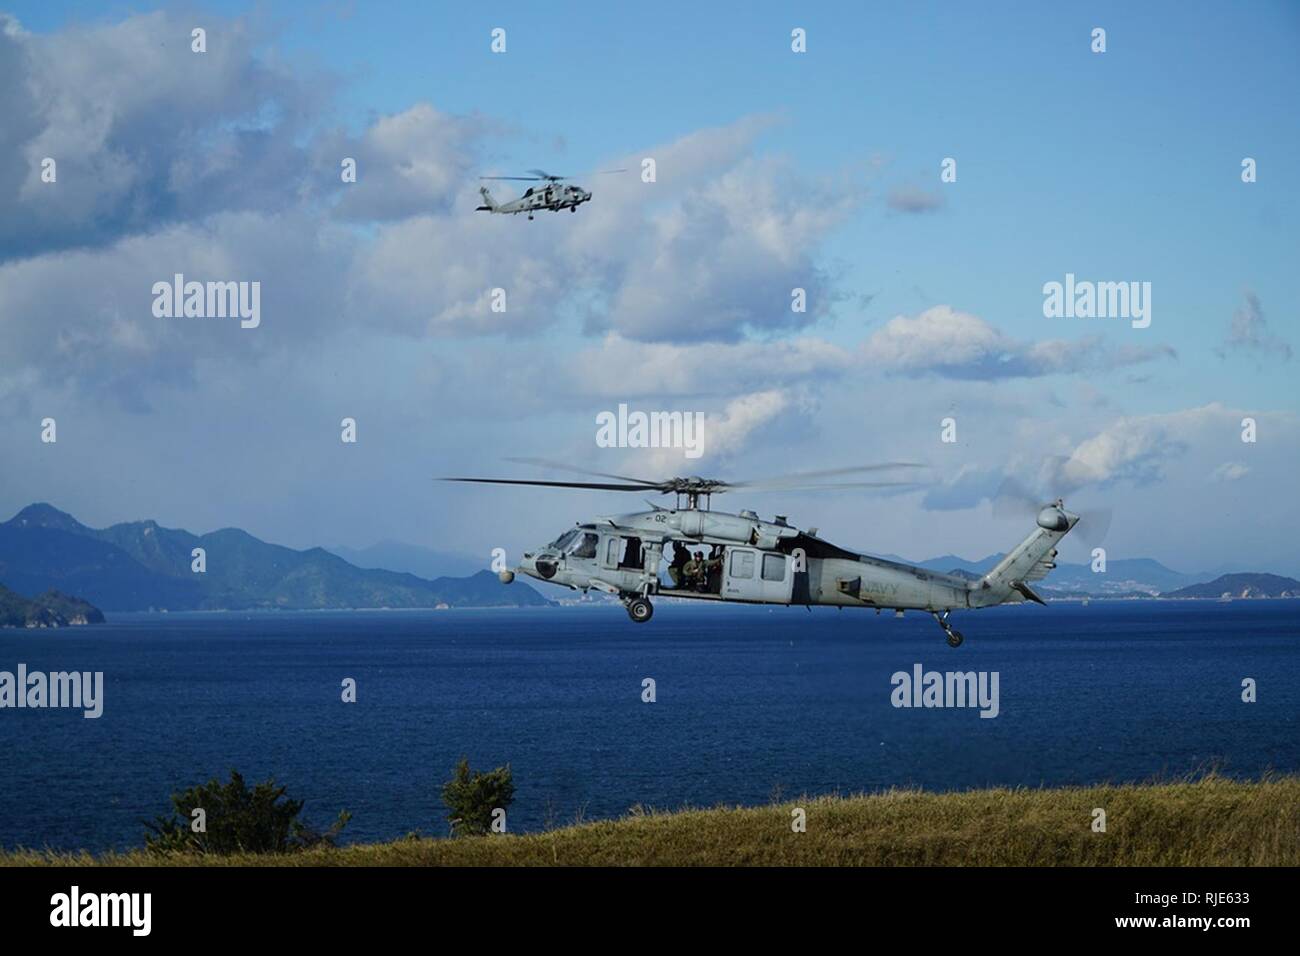 IWAKUNI, Japon (Janv. 25, 2018) La Marine américaine MH-60S Seahawk hélicoptère, affecté à l'Escadron d'hélicoptères de combat de la mer (HSC), 25 plane sur la simulation d'un navire ; tandis qu'un MH-60R Sea Hawk, affecté à l'Escadron d'hélicoptères grève maritime (HSM) 51 orbites, maintenir les frais généraux de surveillance. Ensemble, les escadrons ont effectué une visite simulé d'un hélicoptère de recherche et de saisie d'un événement au cours de deux semaines de formation de détachement expéditionnaire de Marine Corps Air Station Iwakuni. Banque D'Images